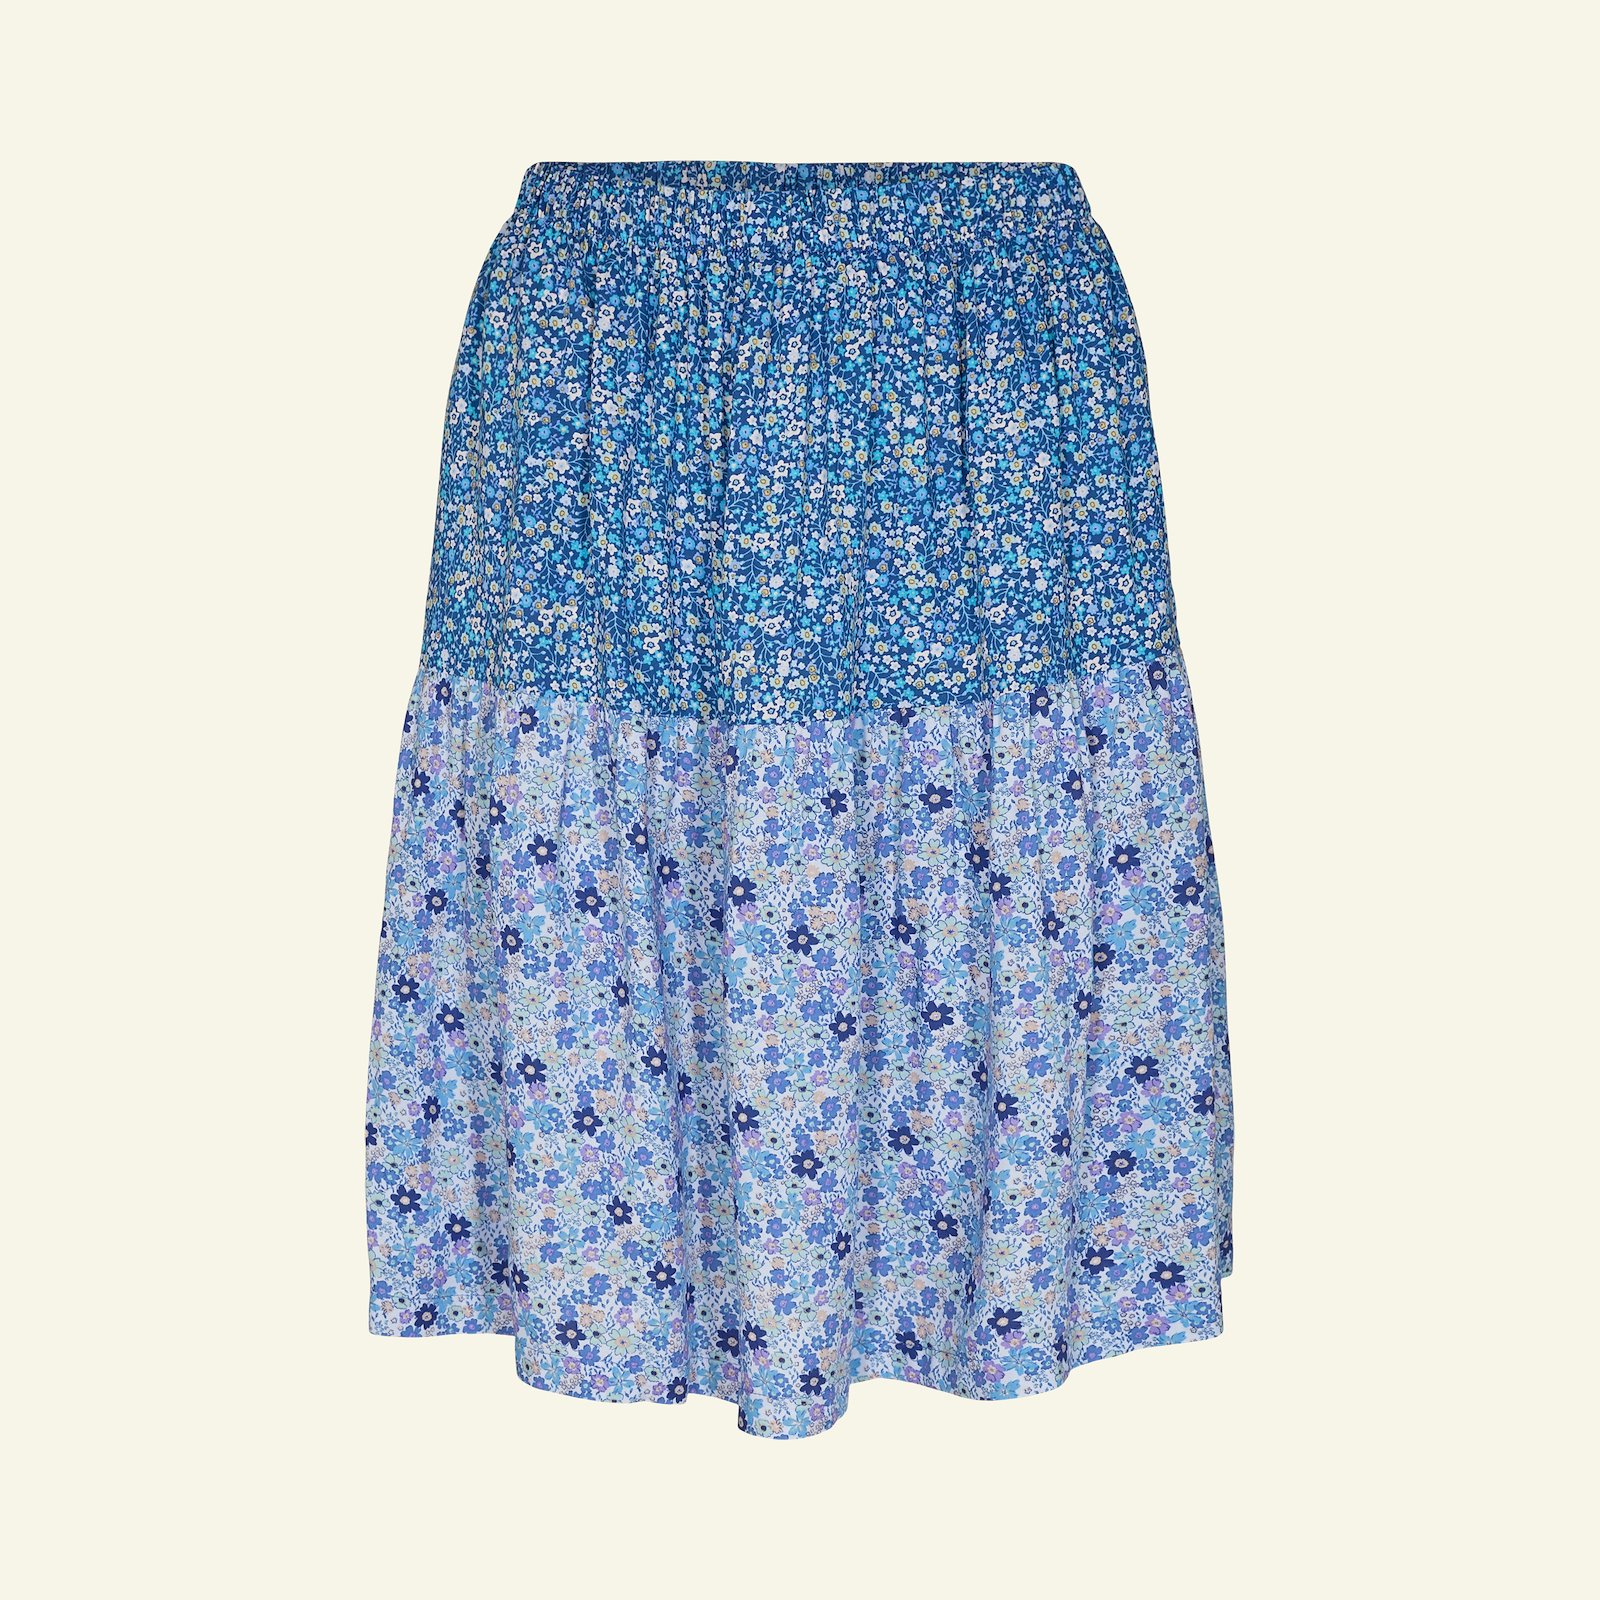 Split level skirt, XL p21046_710638_710639_sskit